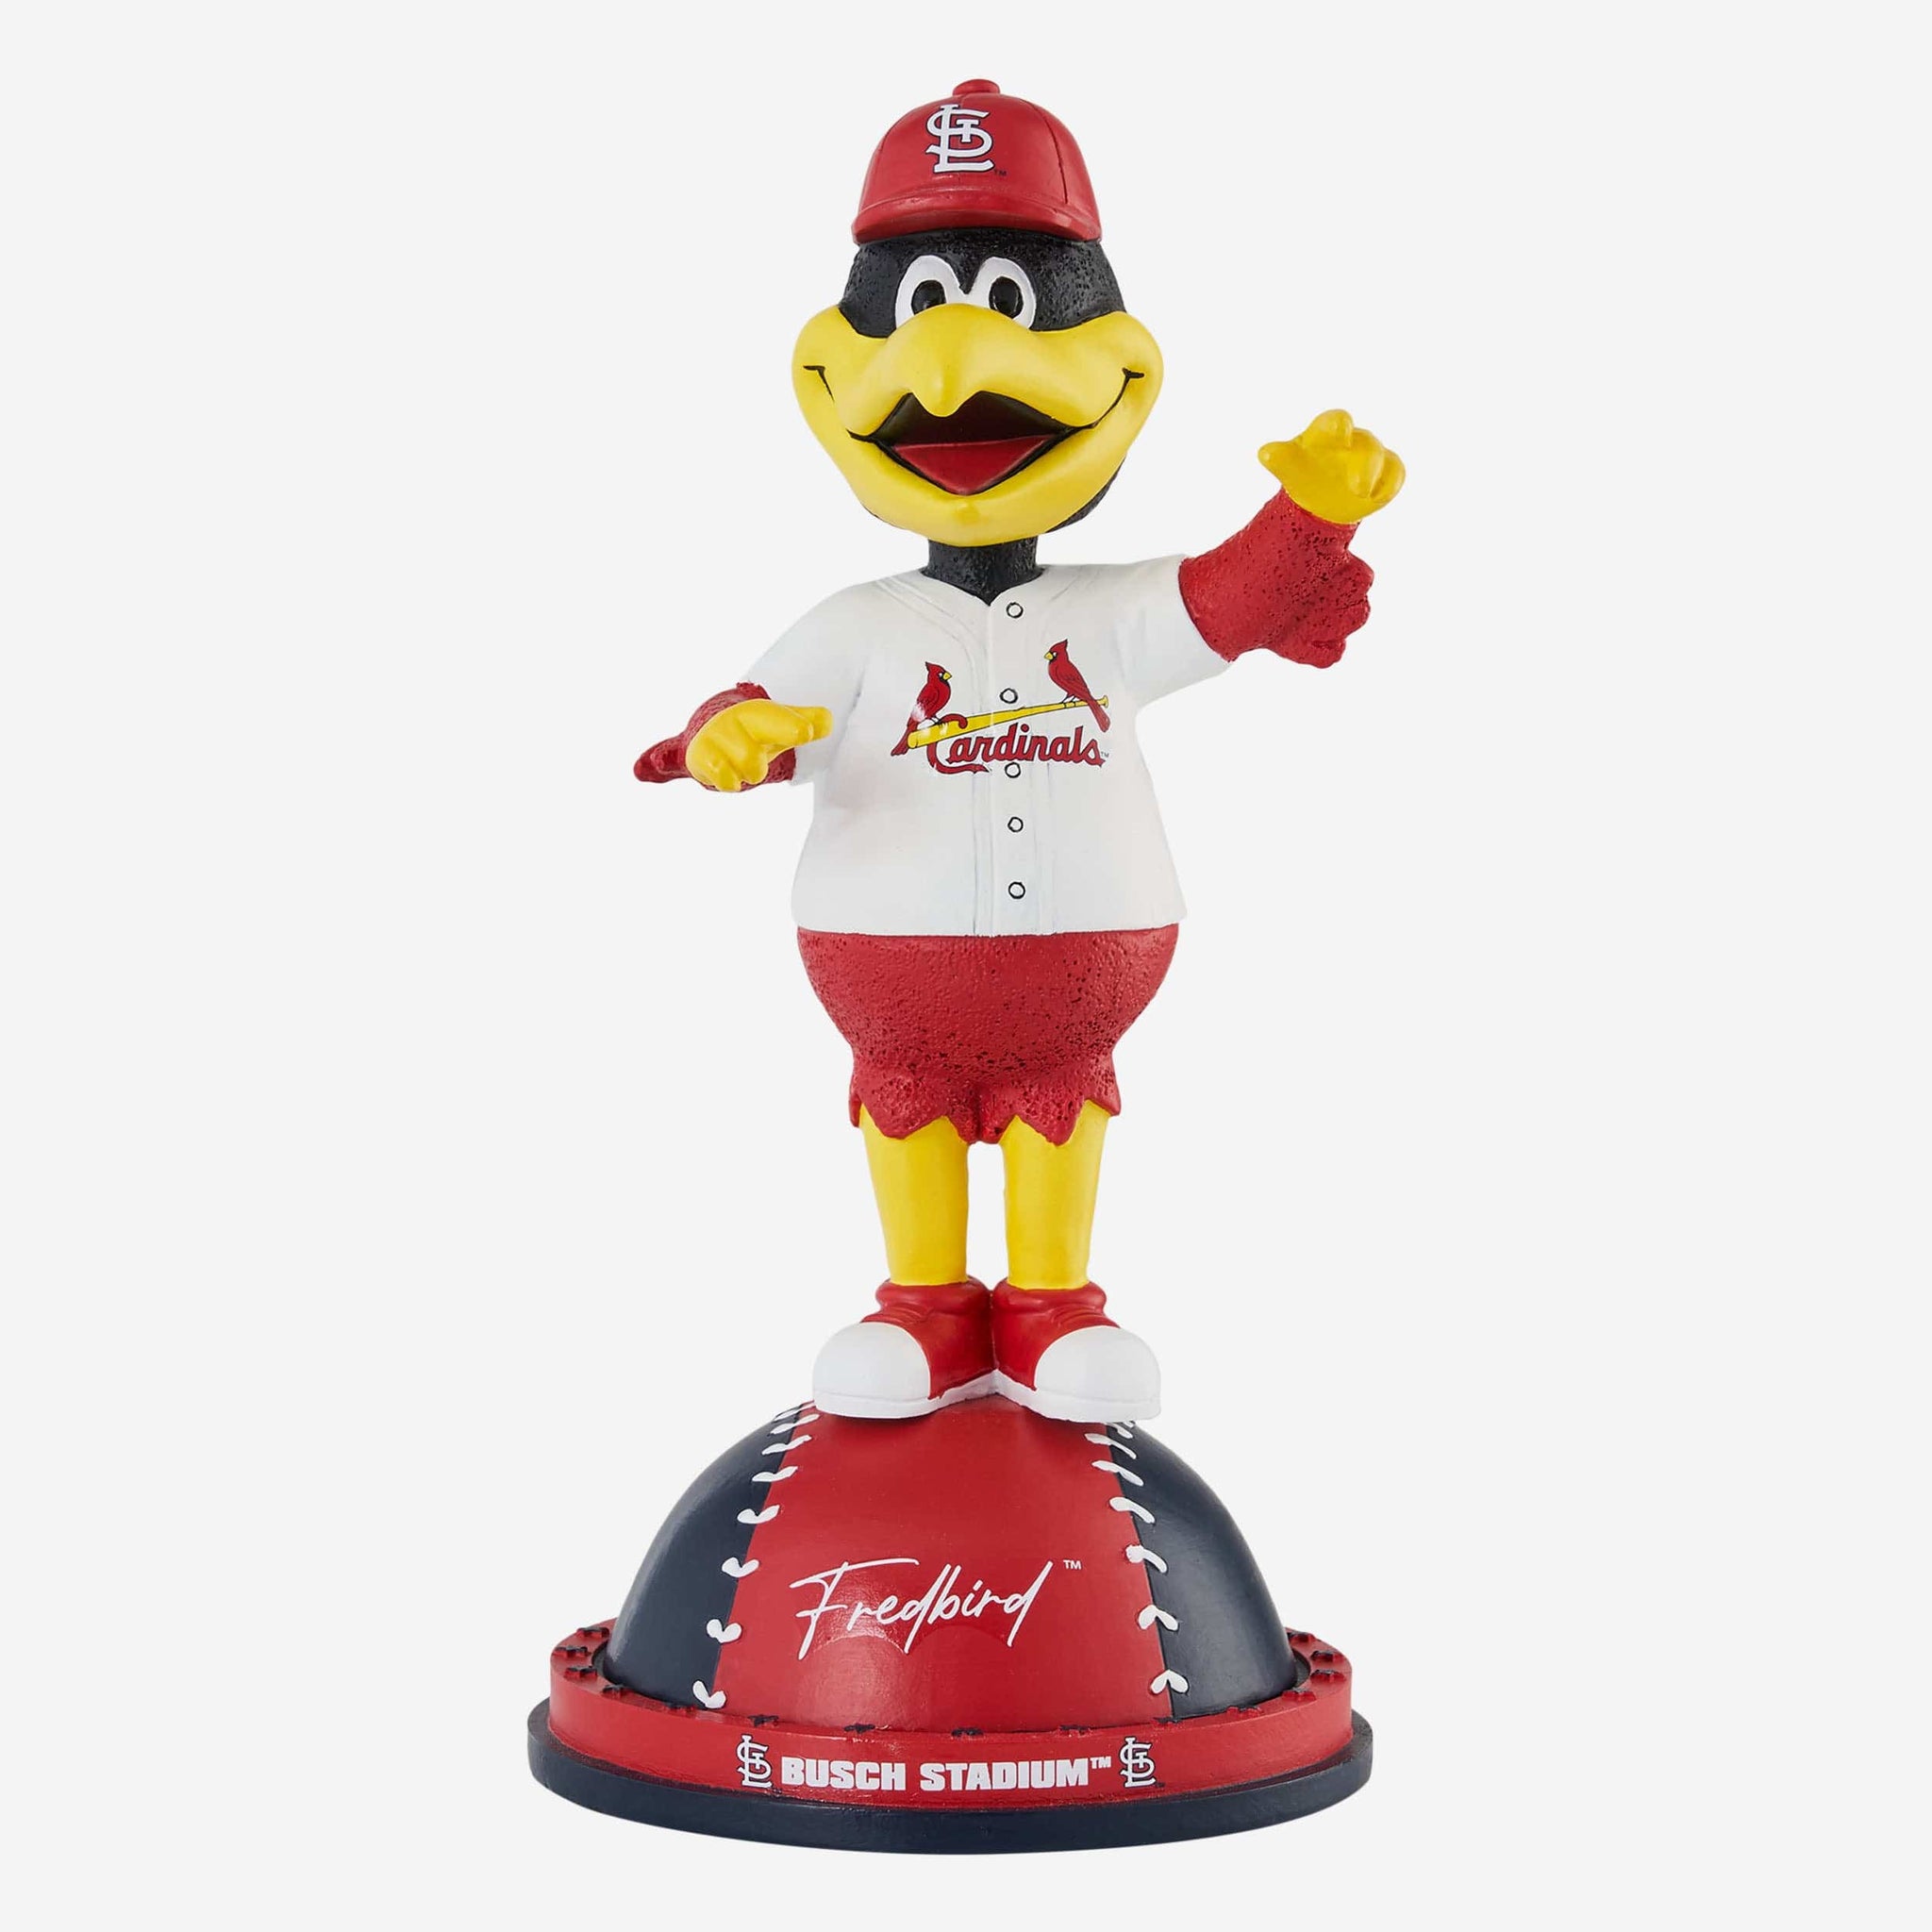 Fredbird St Louis Cardinals Thanksgiving Mascot Bobblehead